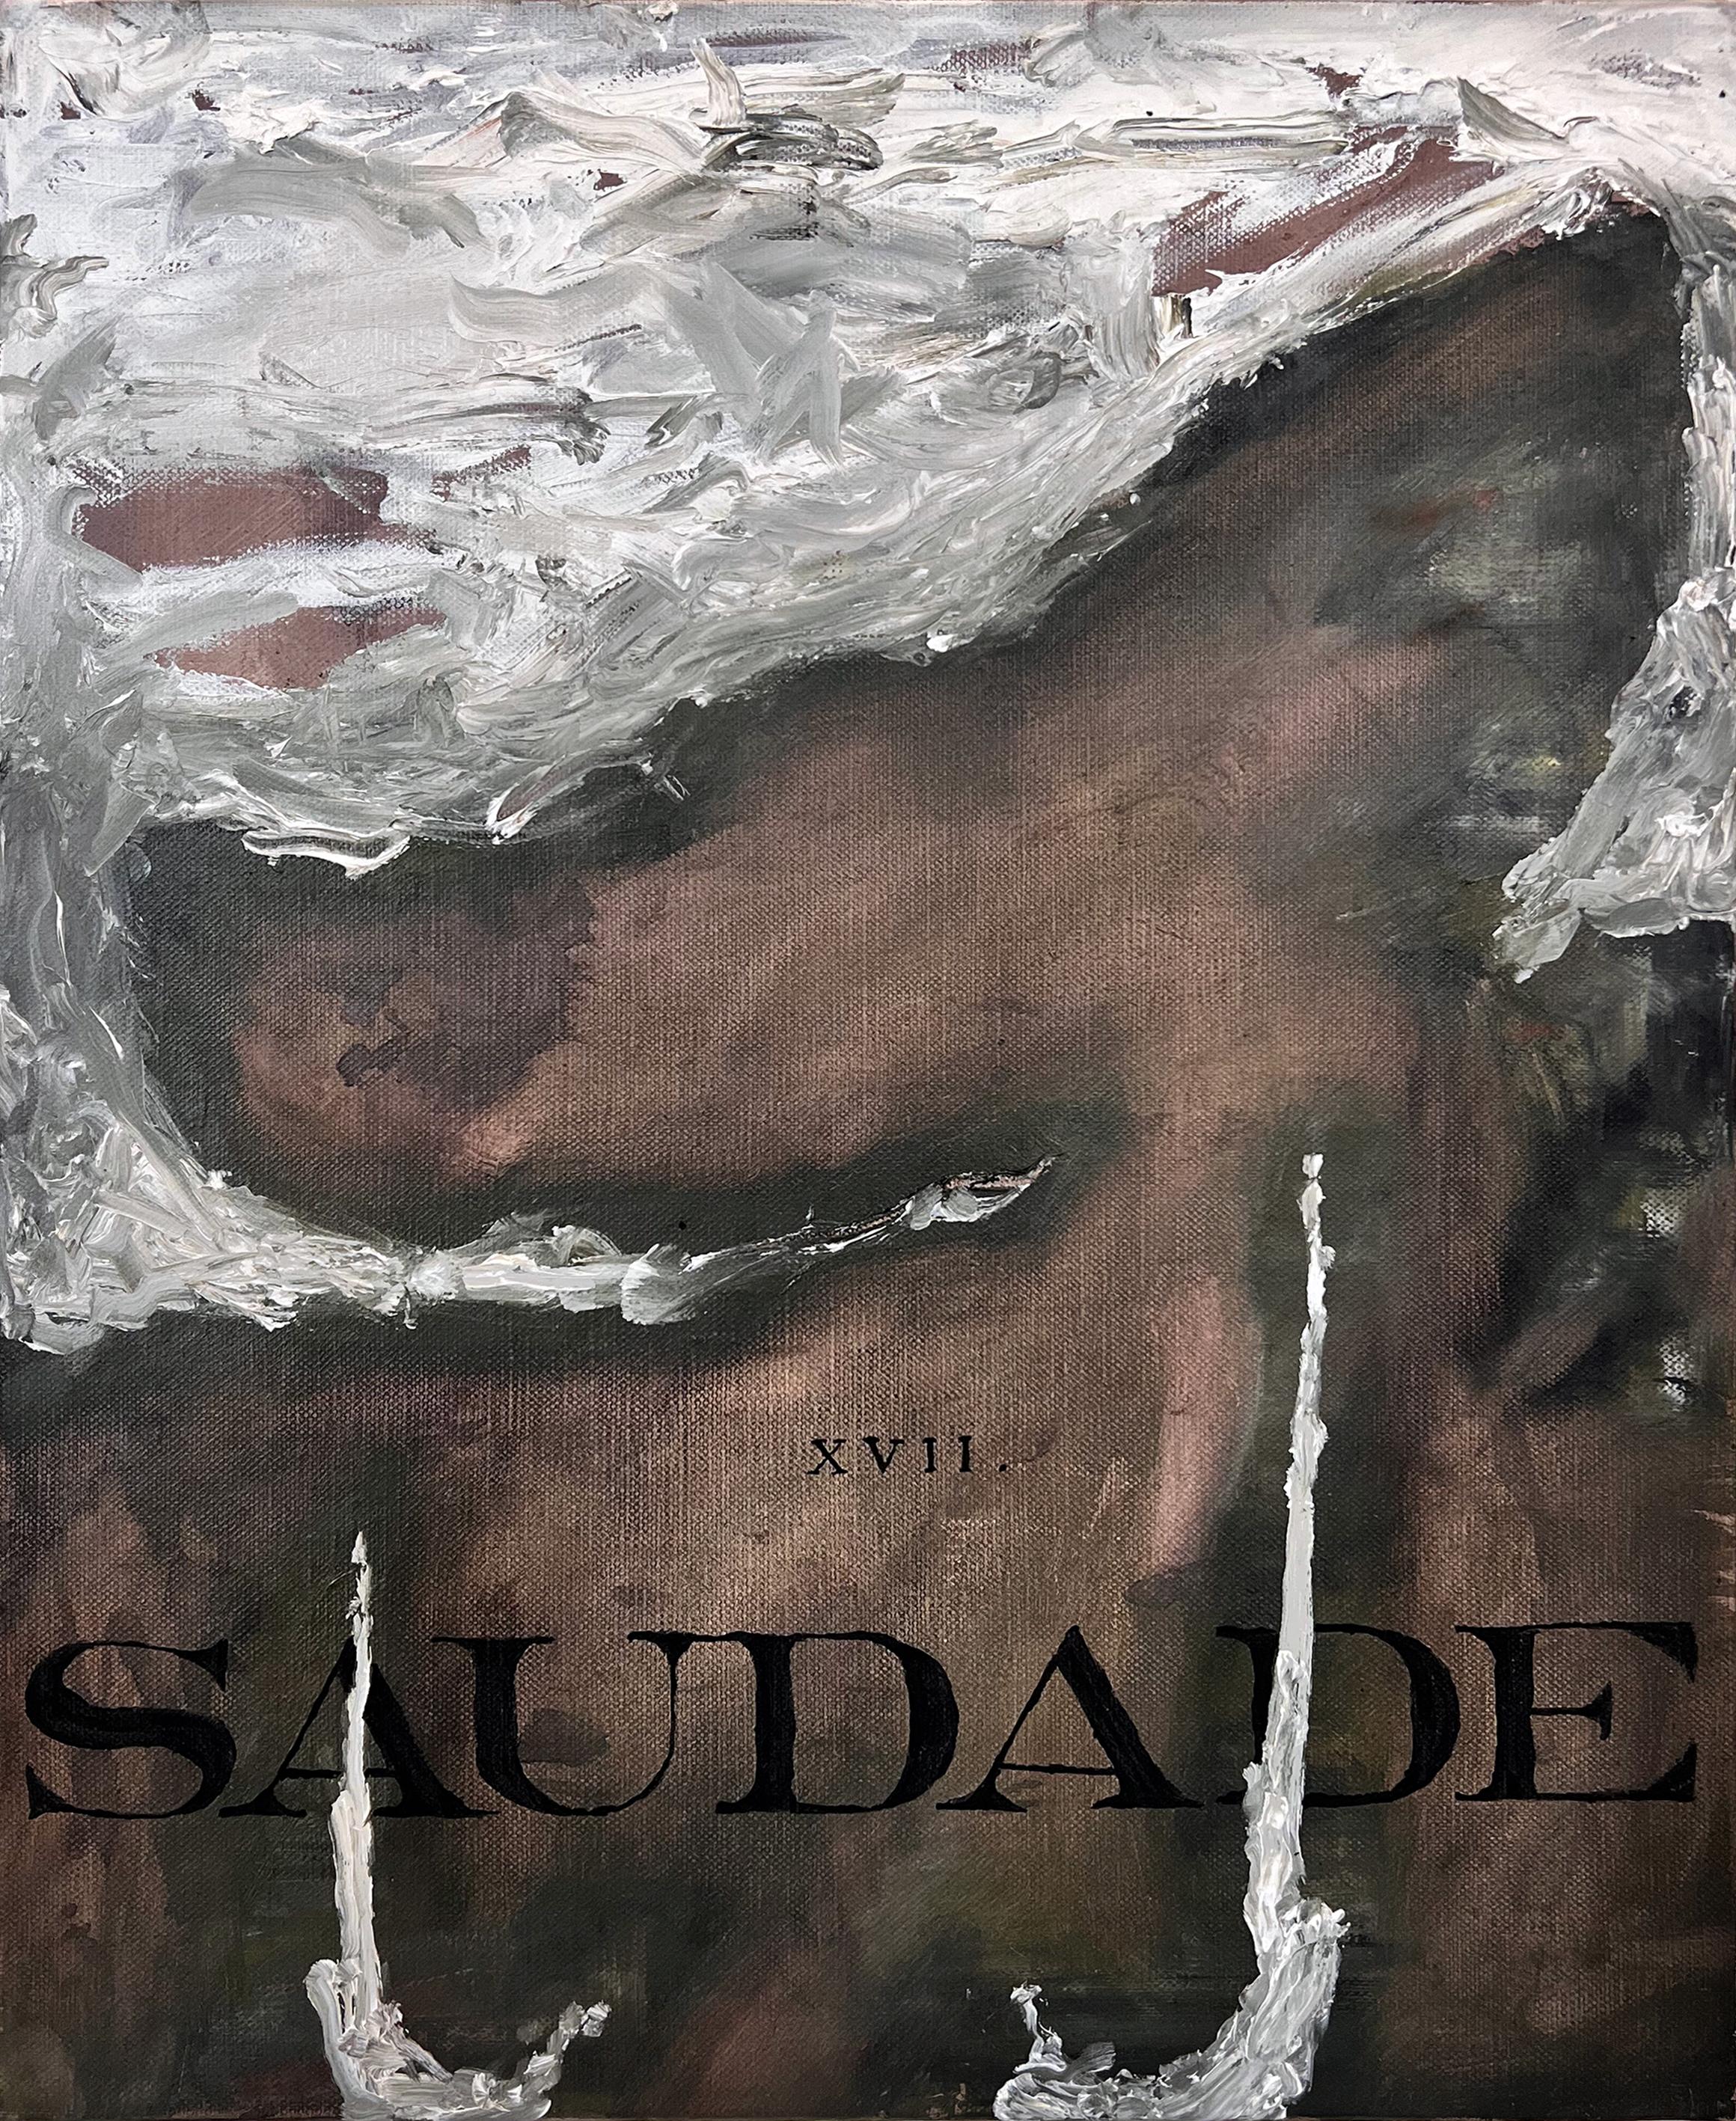 Abstract Painting Nicholas Evans - "Saudade" (noir et blanc, riche, texte, typographie, abstrait, surréaliste, naturel, neutre).